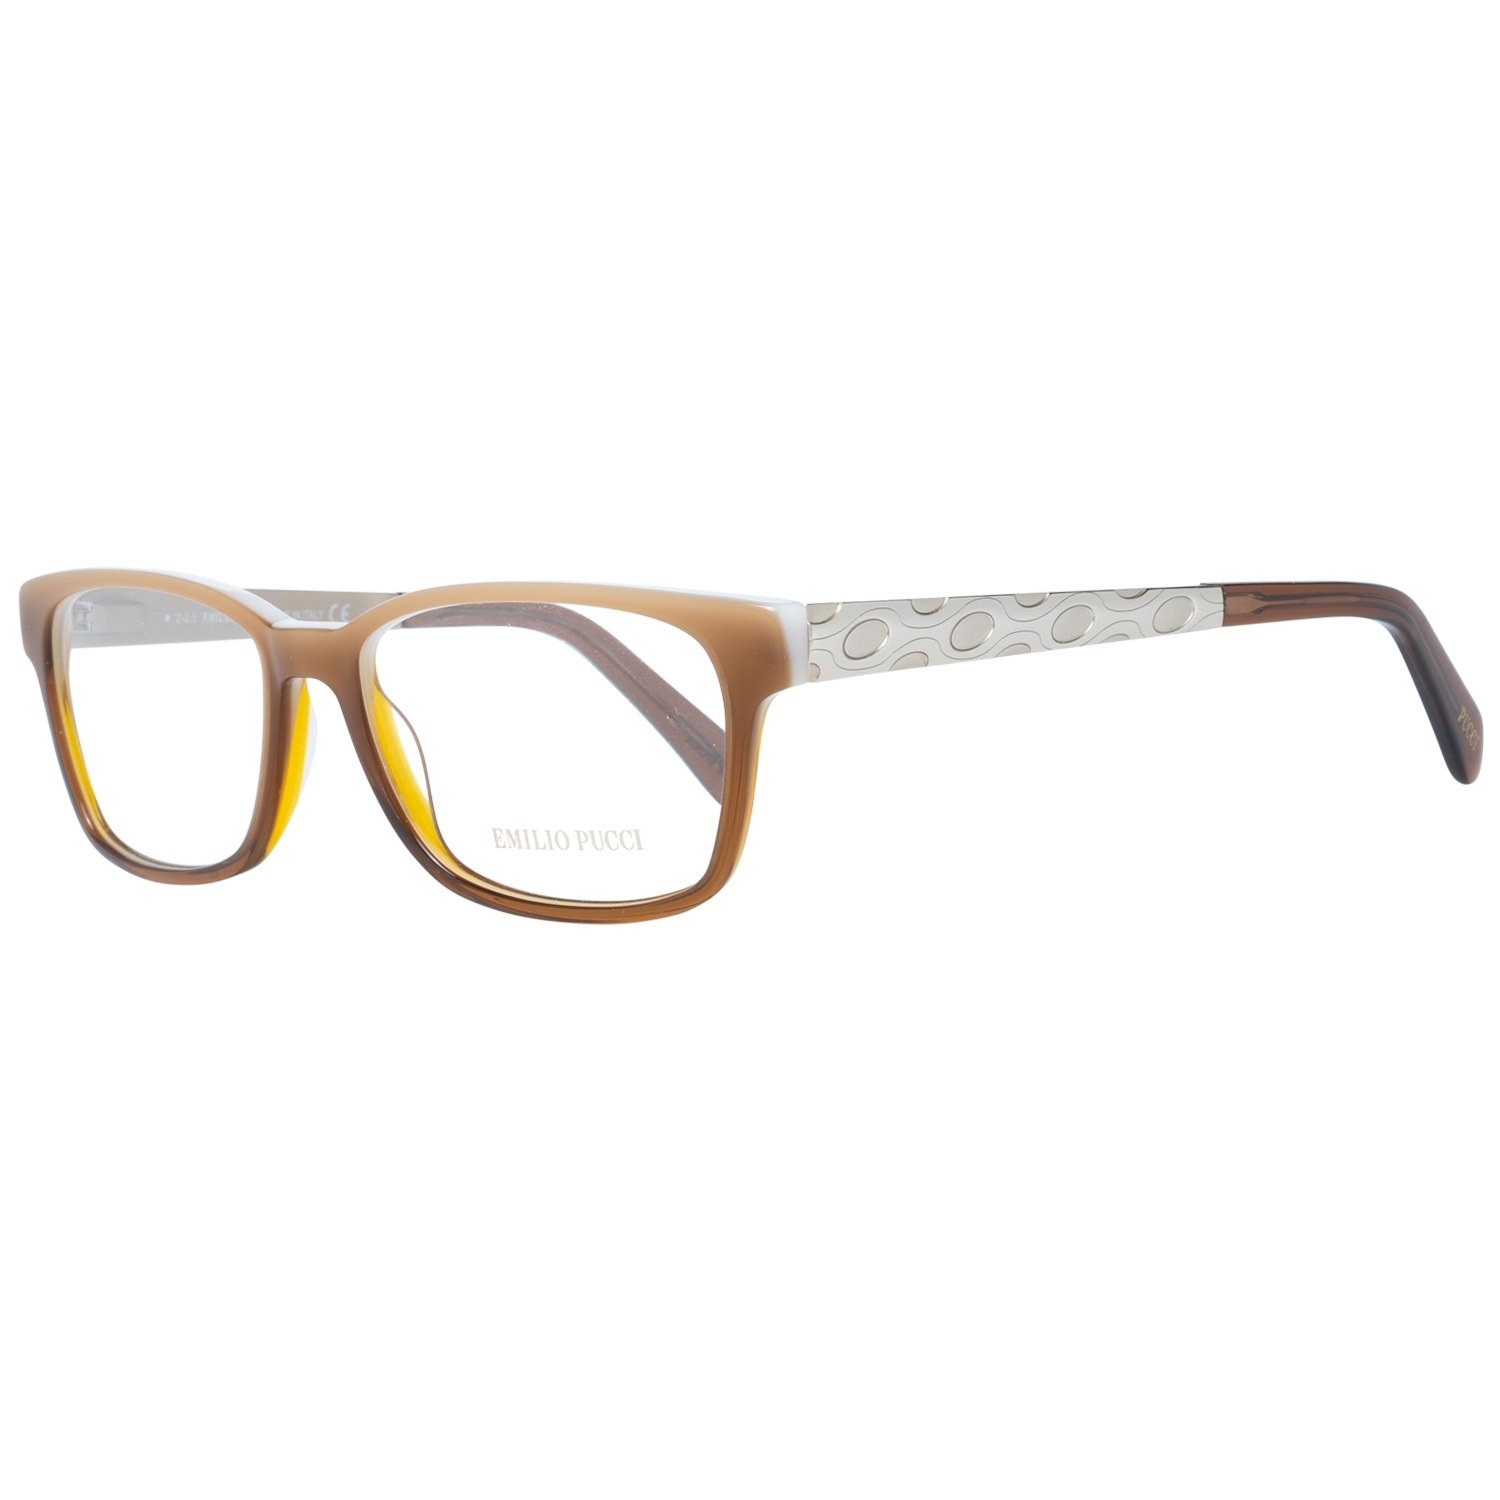 Emilio Pucci Frames Emilio Pucci Optical Frame EP5026 047 54 Eyeglasses Eyewear UK USA Australia 